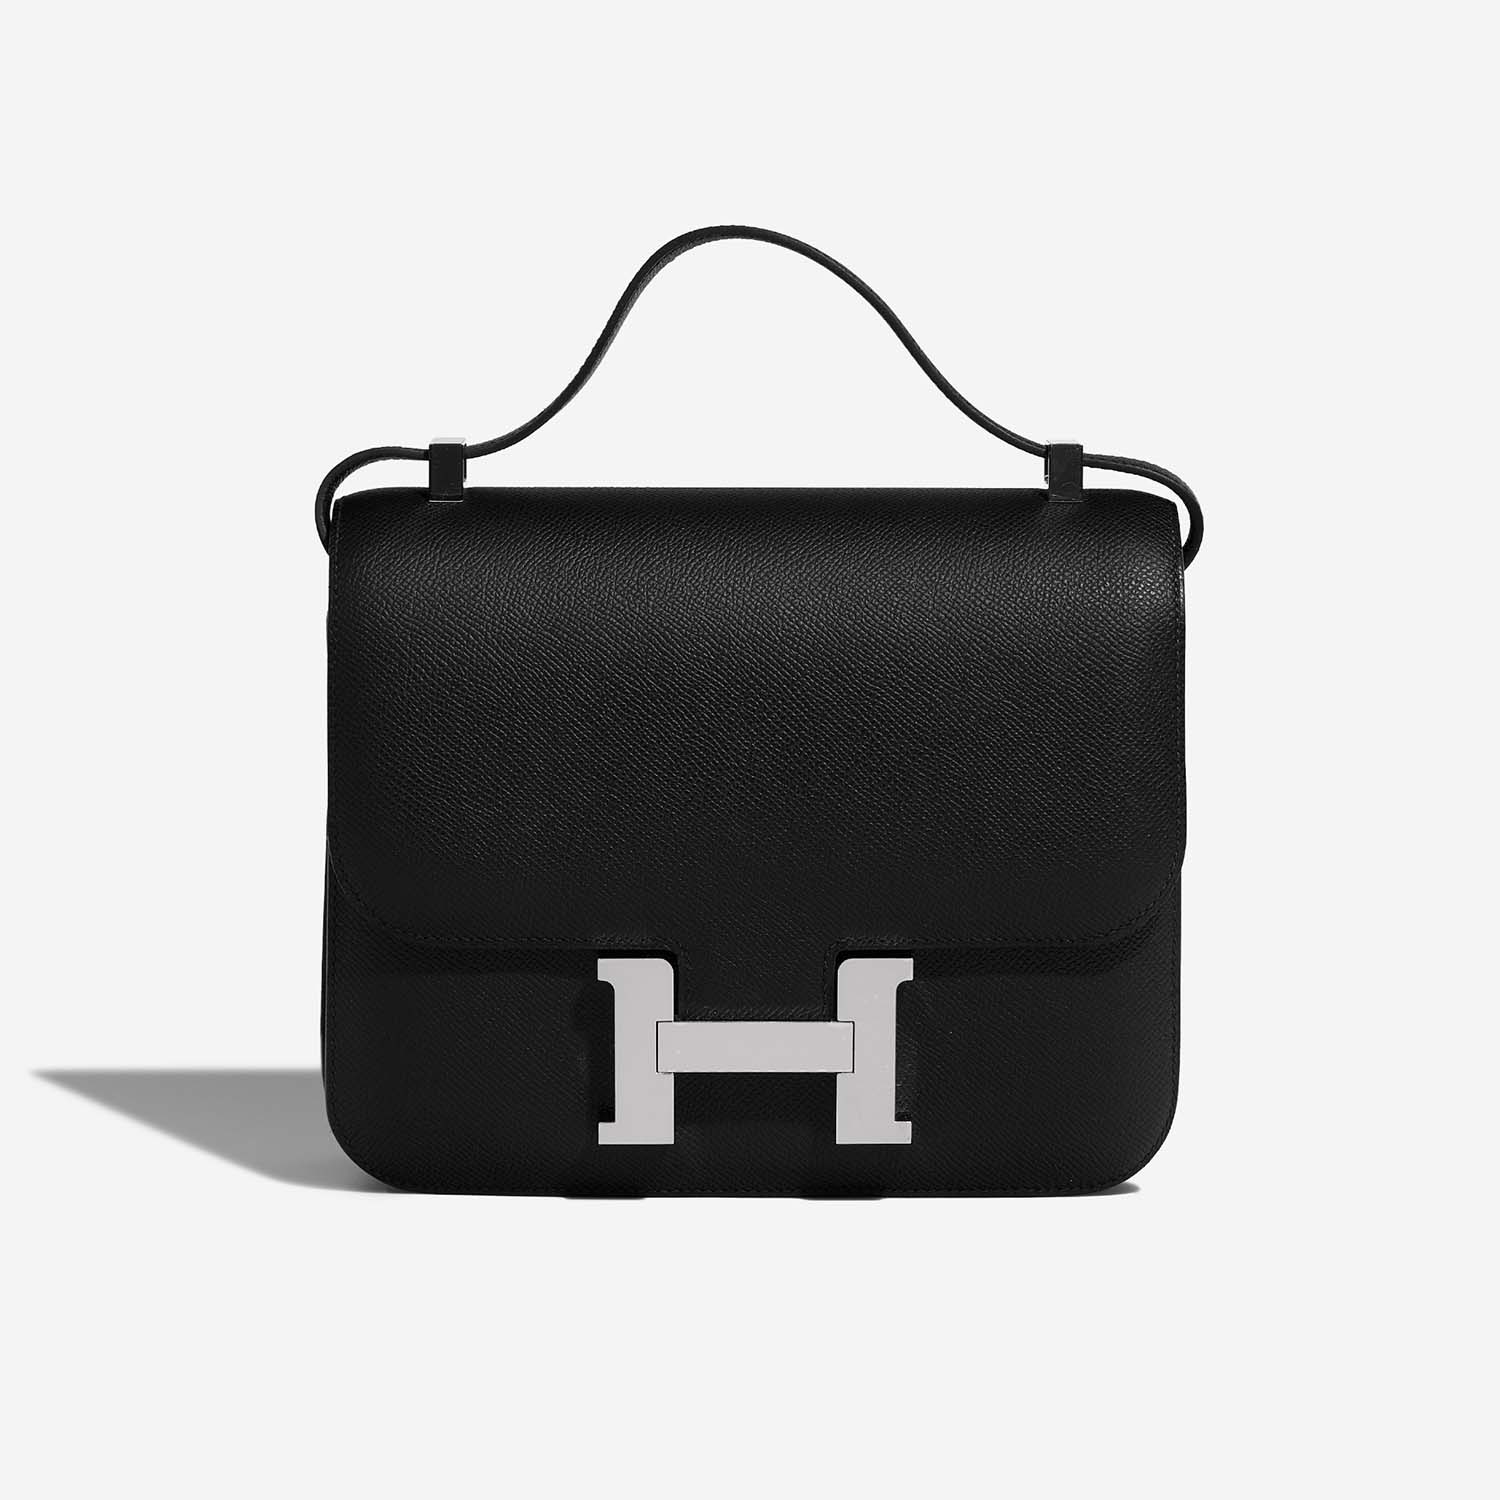 Hermès Constance 24 Schwarz 2F S | Verkaufen Sie Ihre Designer-Tasche auf Saclab.com